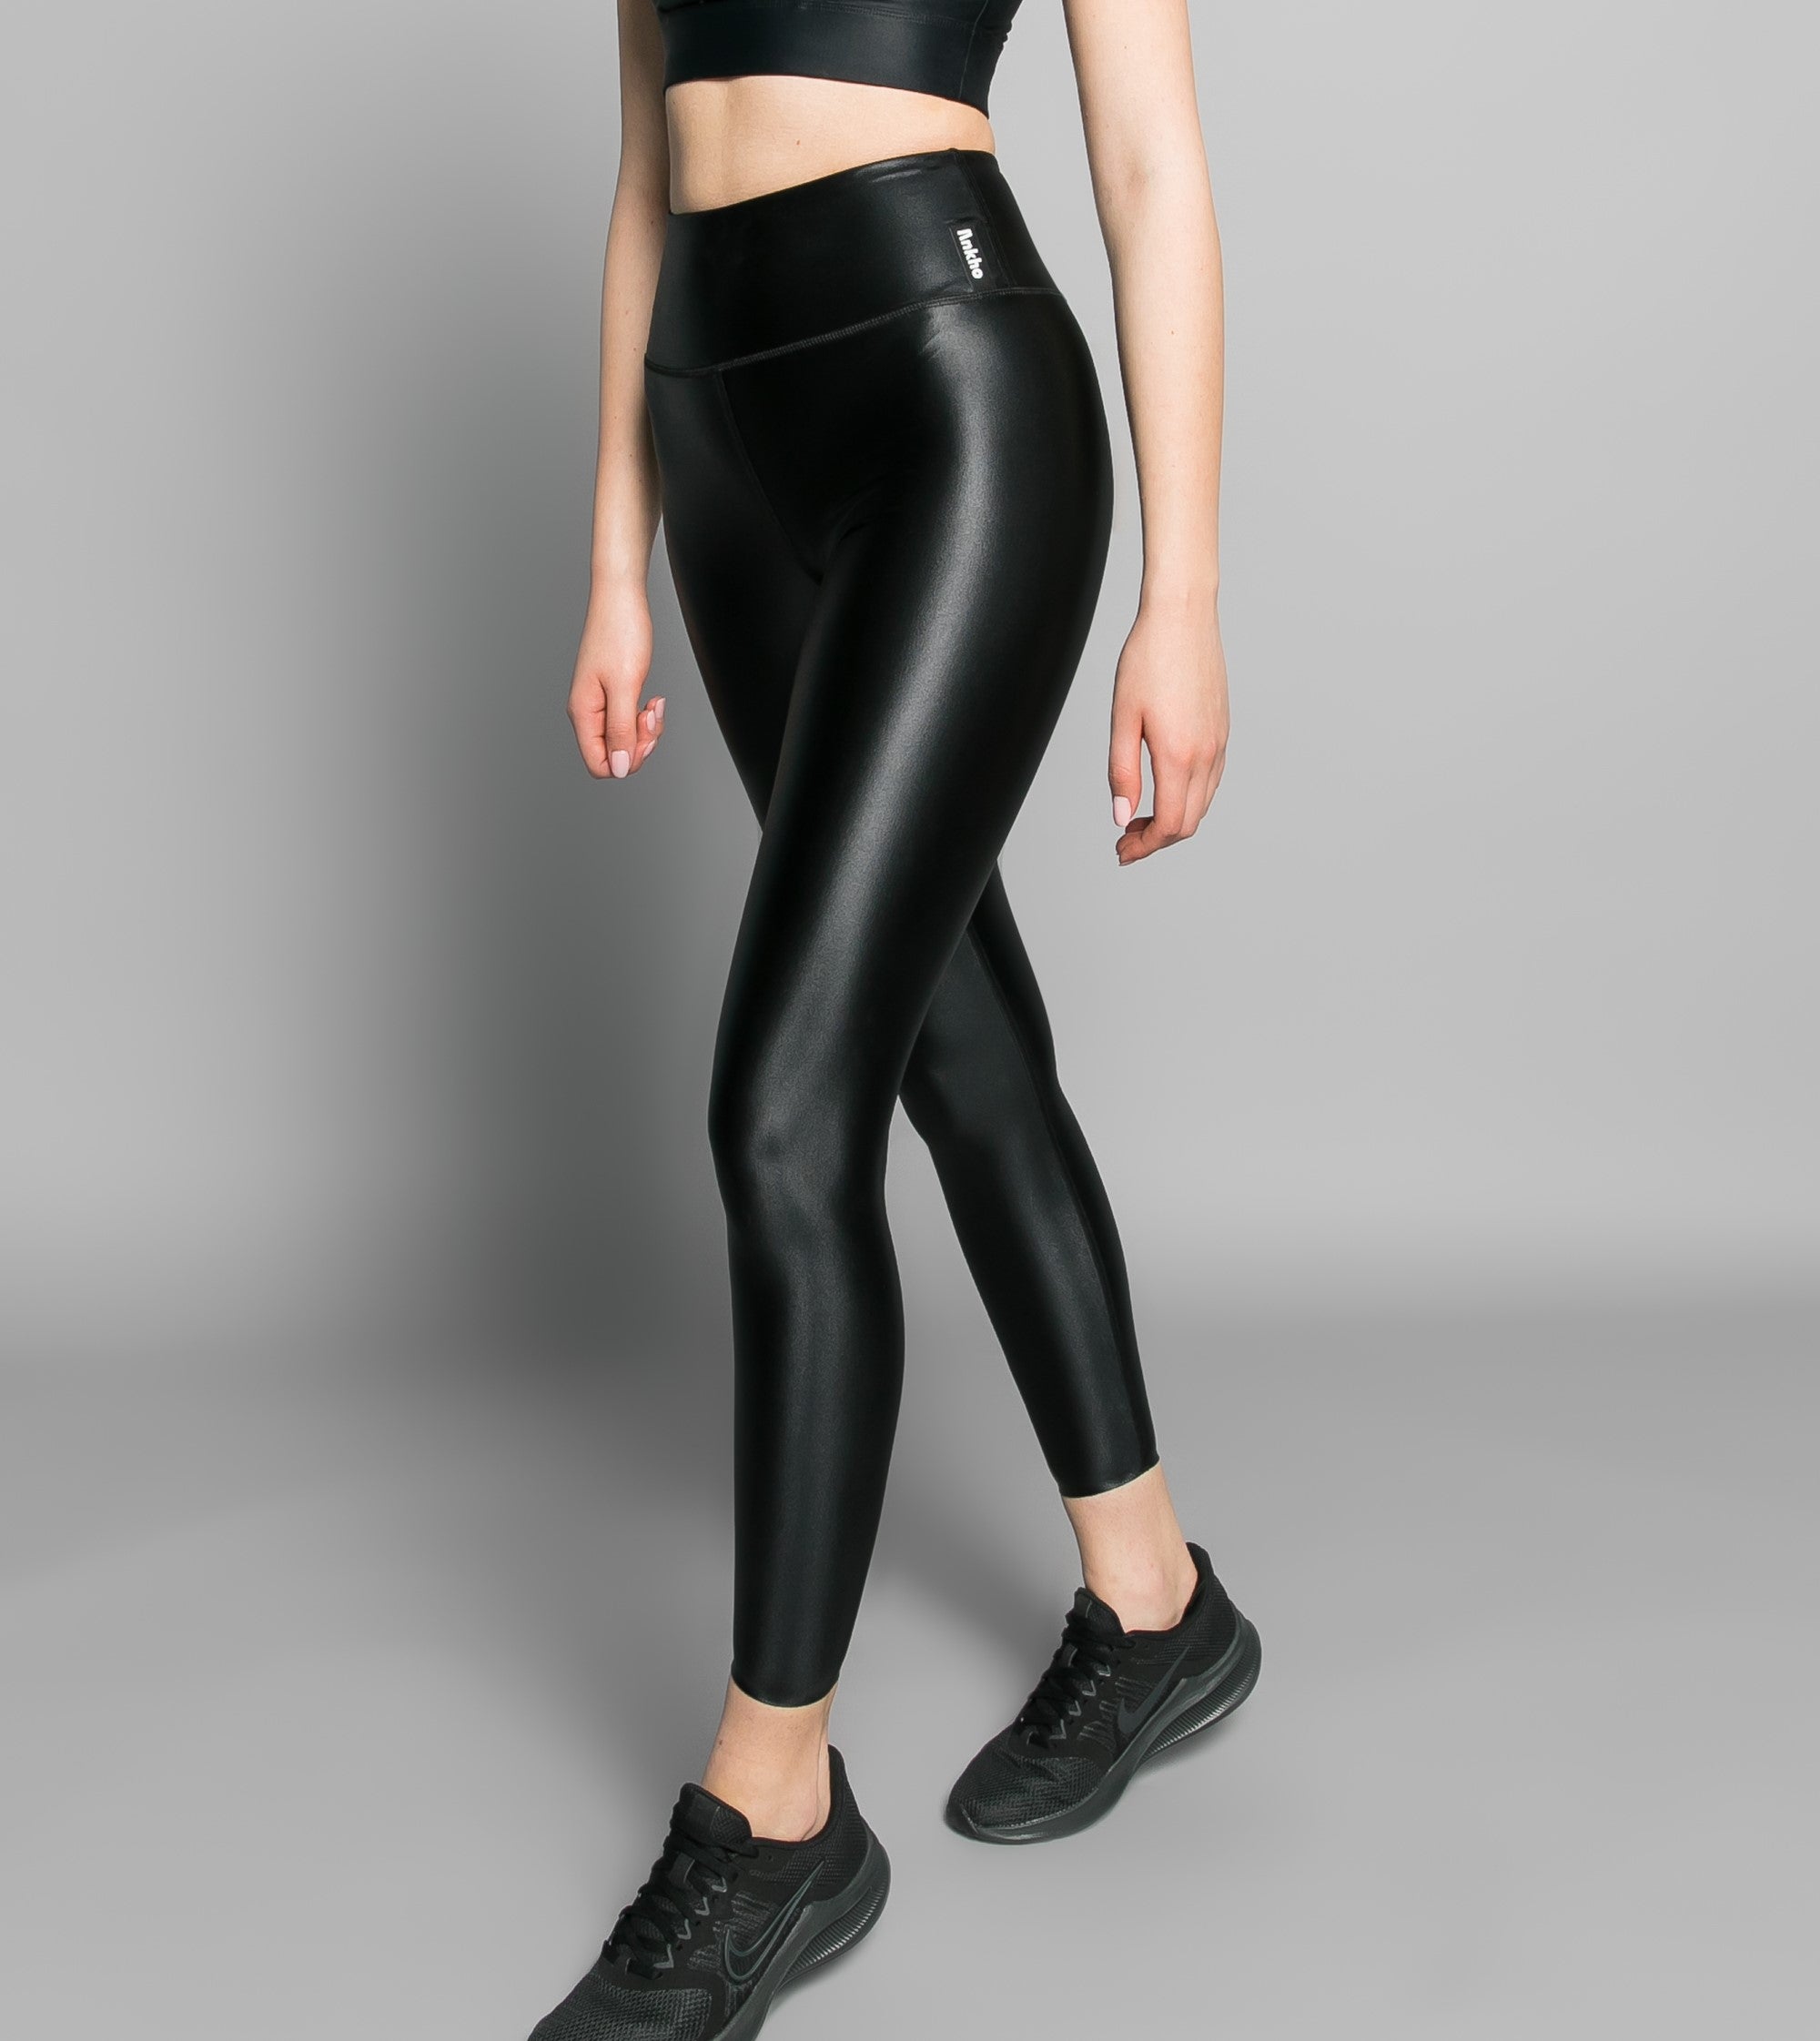 Spandex Leggings - In shiny black